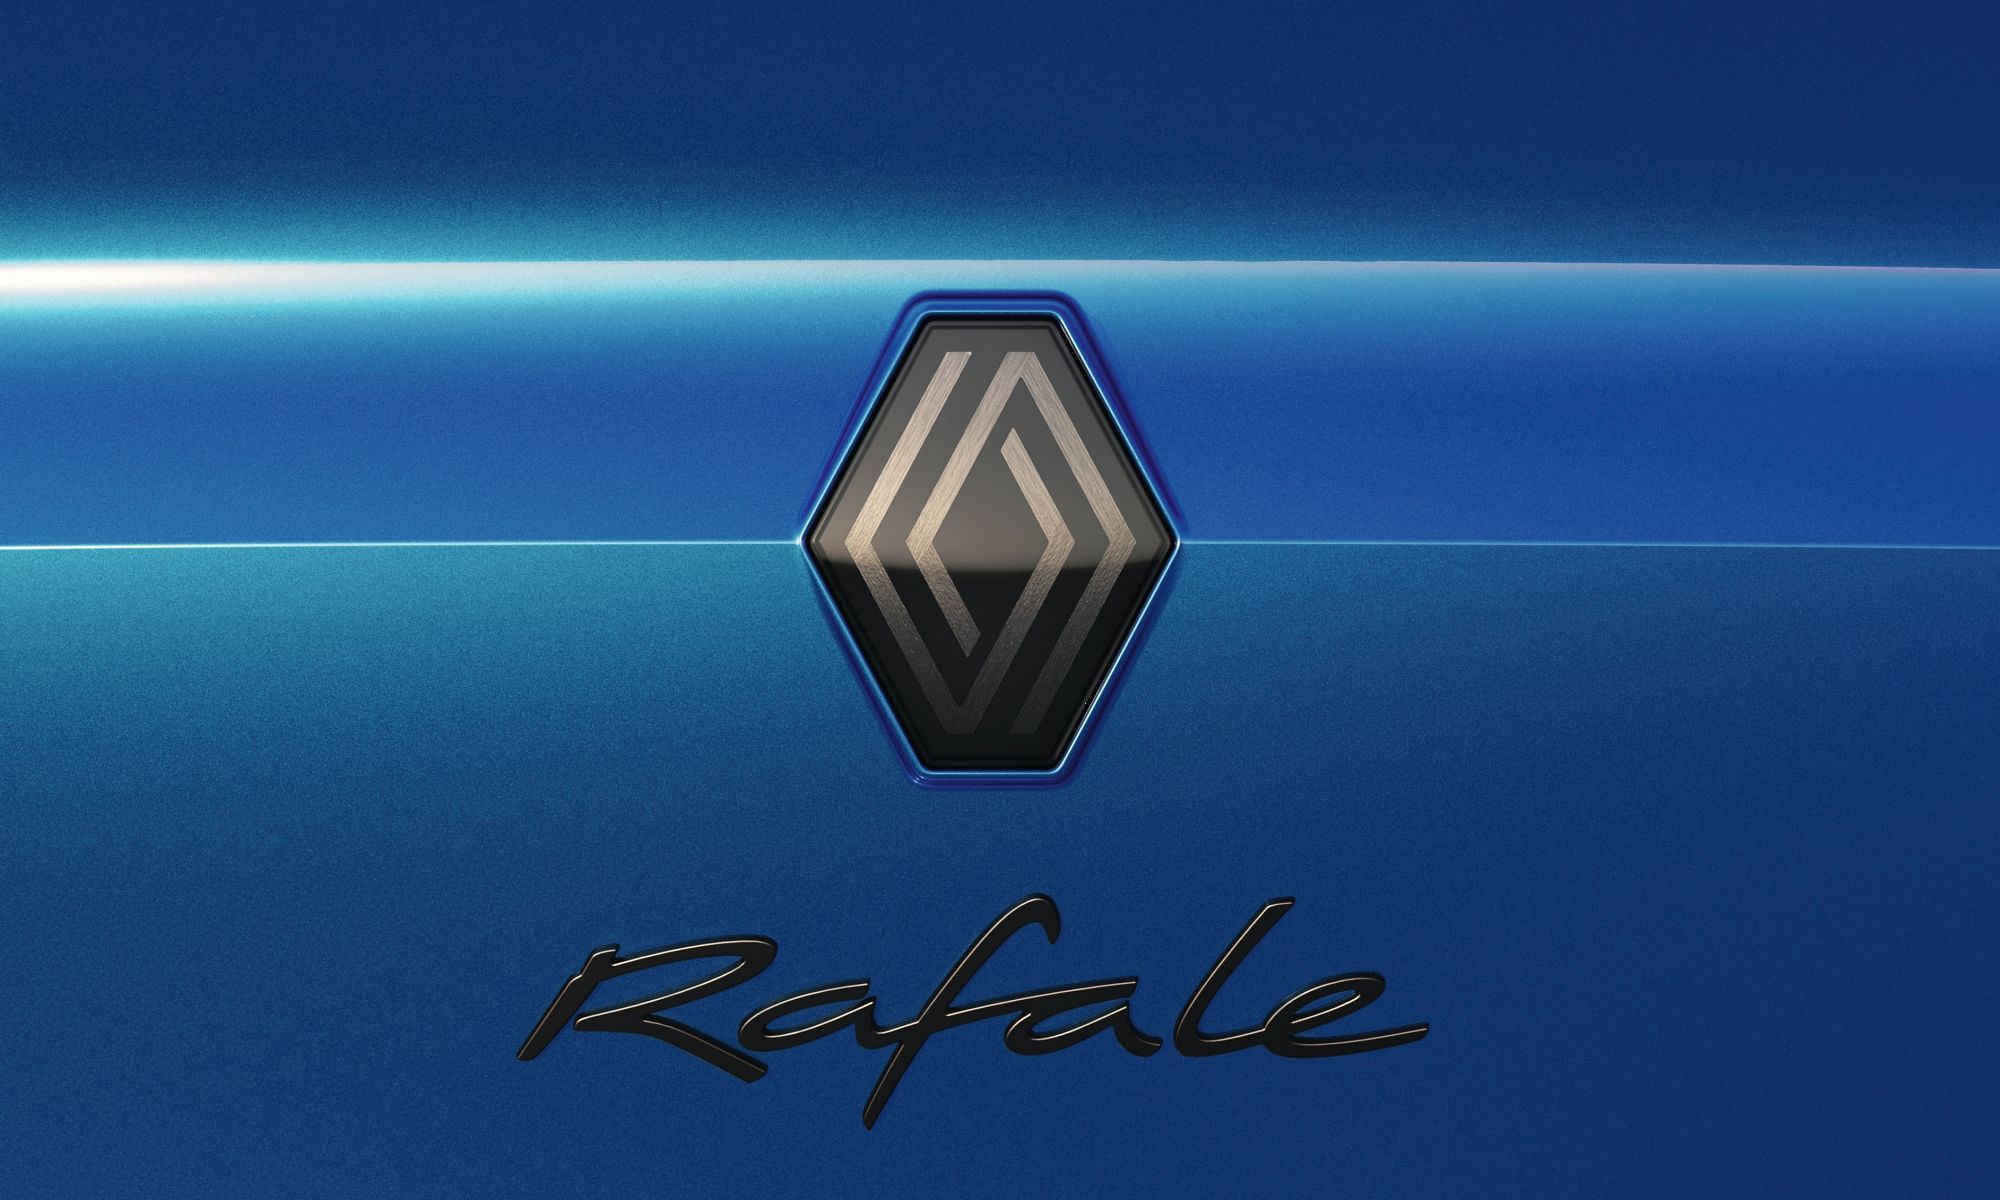 Denominación del modelo bajo el logo de Renault, presumiblemente en la zaga del mismo.